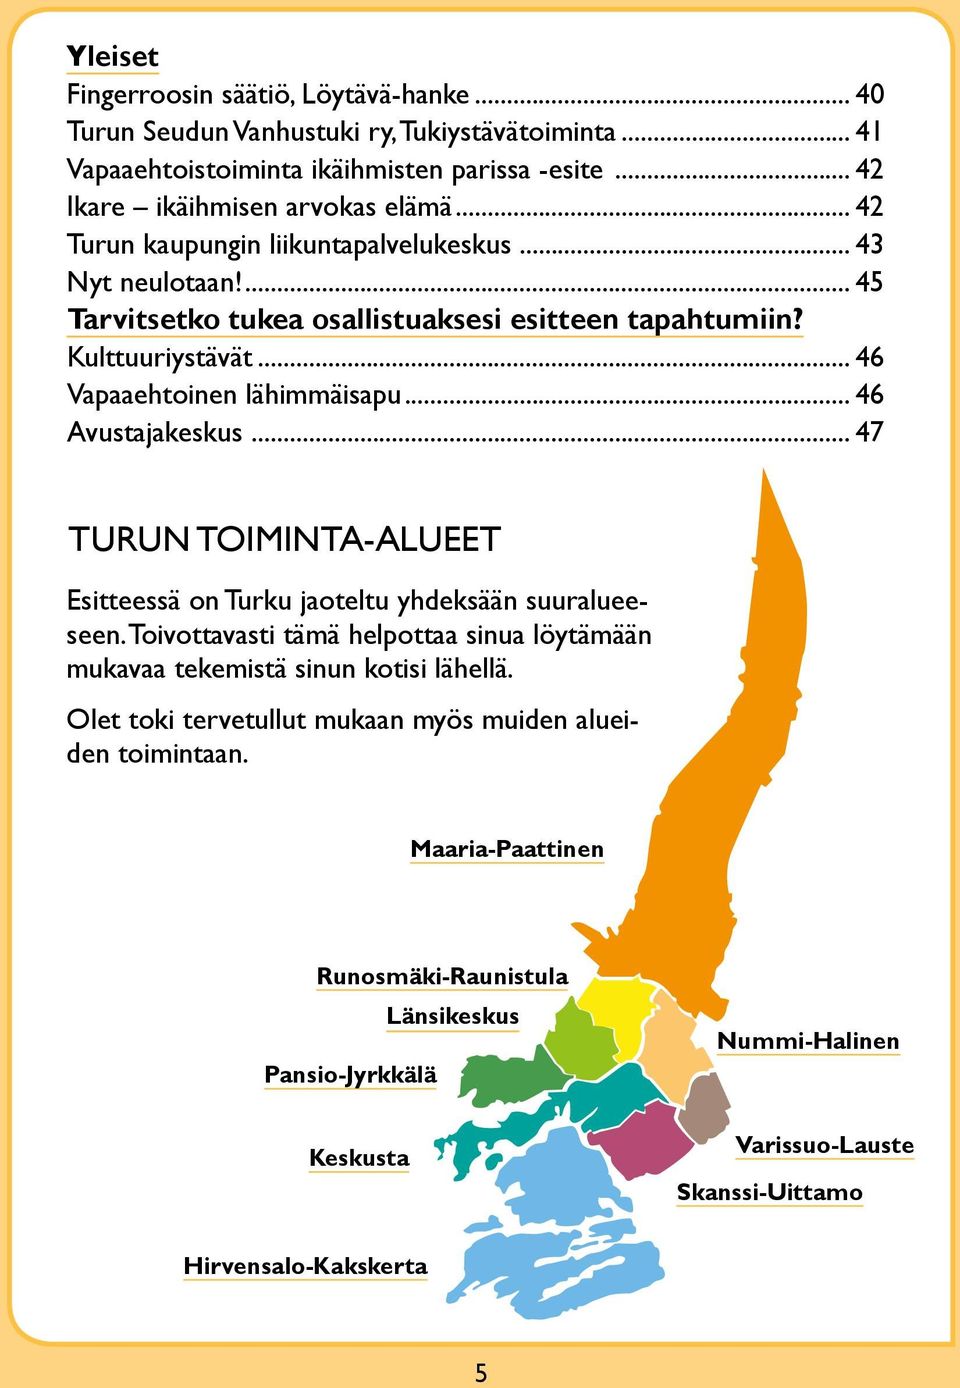 .. 46 Avustajakeskus... 47 Turun toiminta-alueet Esitteessä on Turku jaoteltu yhdeksään suuralueeseen. Toivottavasti tämä helpottaa sinua löytämään mukavaa tekemistä sinun kotisi lähellä.